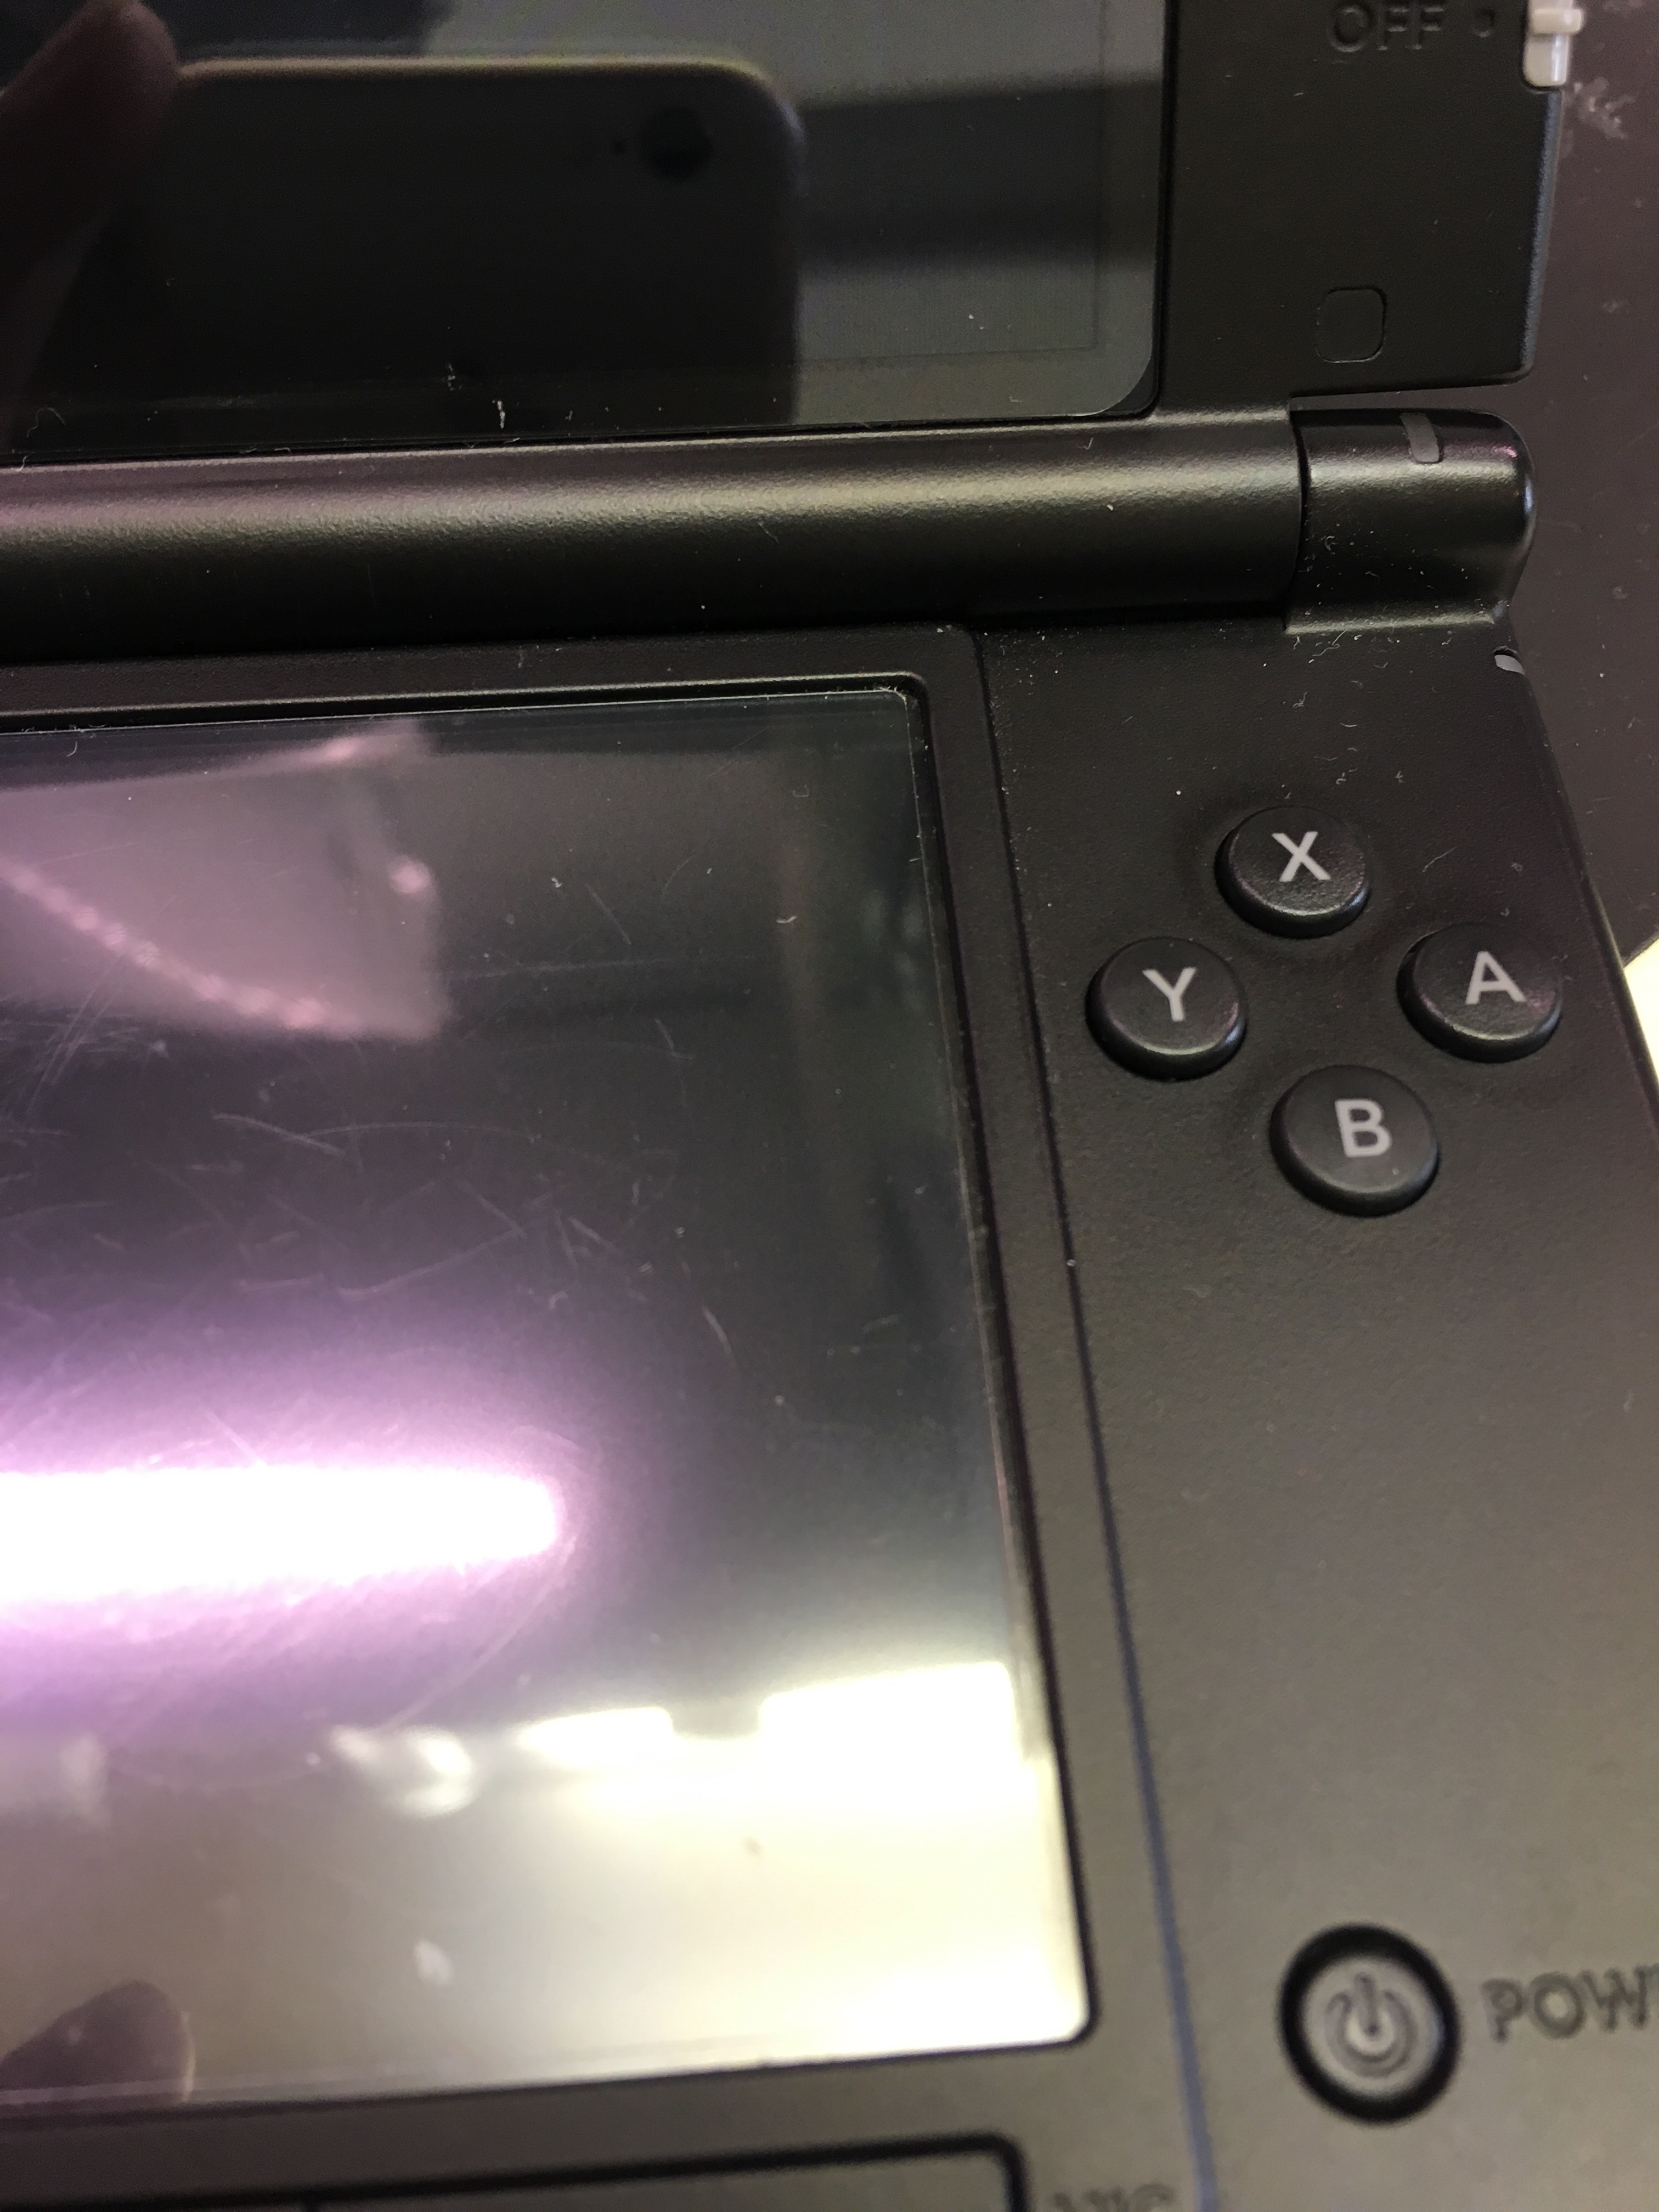 ニンテンドー3ds Llのボタン操作が効かなくなってしまった Nintendo3ds Switch Psp 修理のゲームホスピタル Nintendo3ds ニンテンドーds Psp 修理